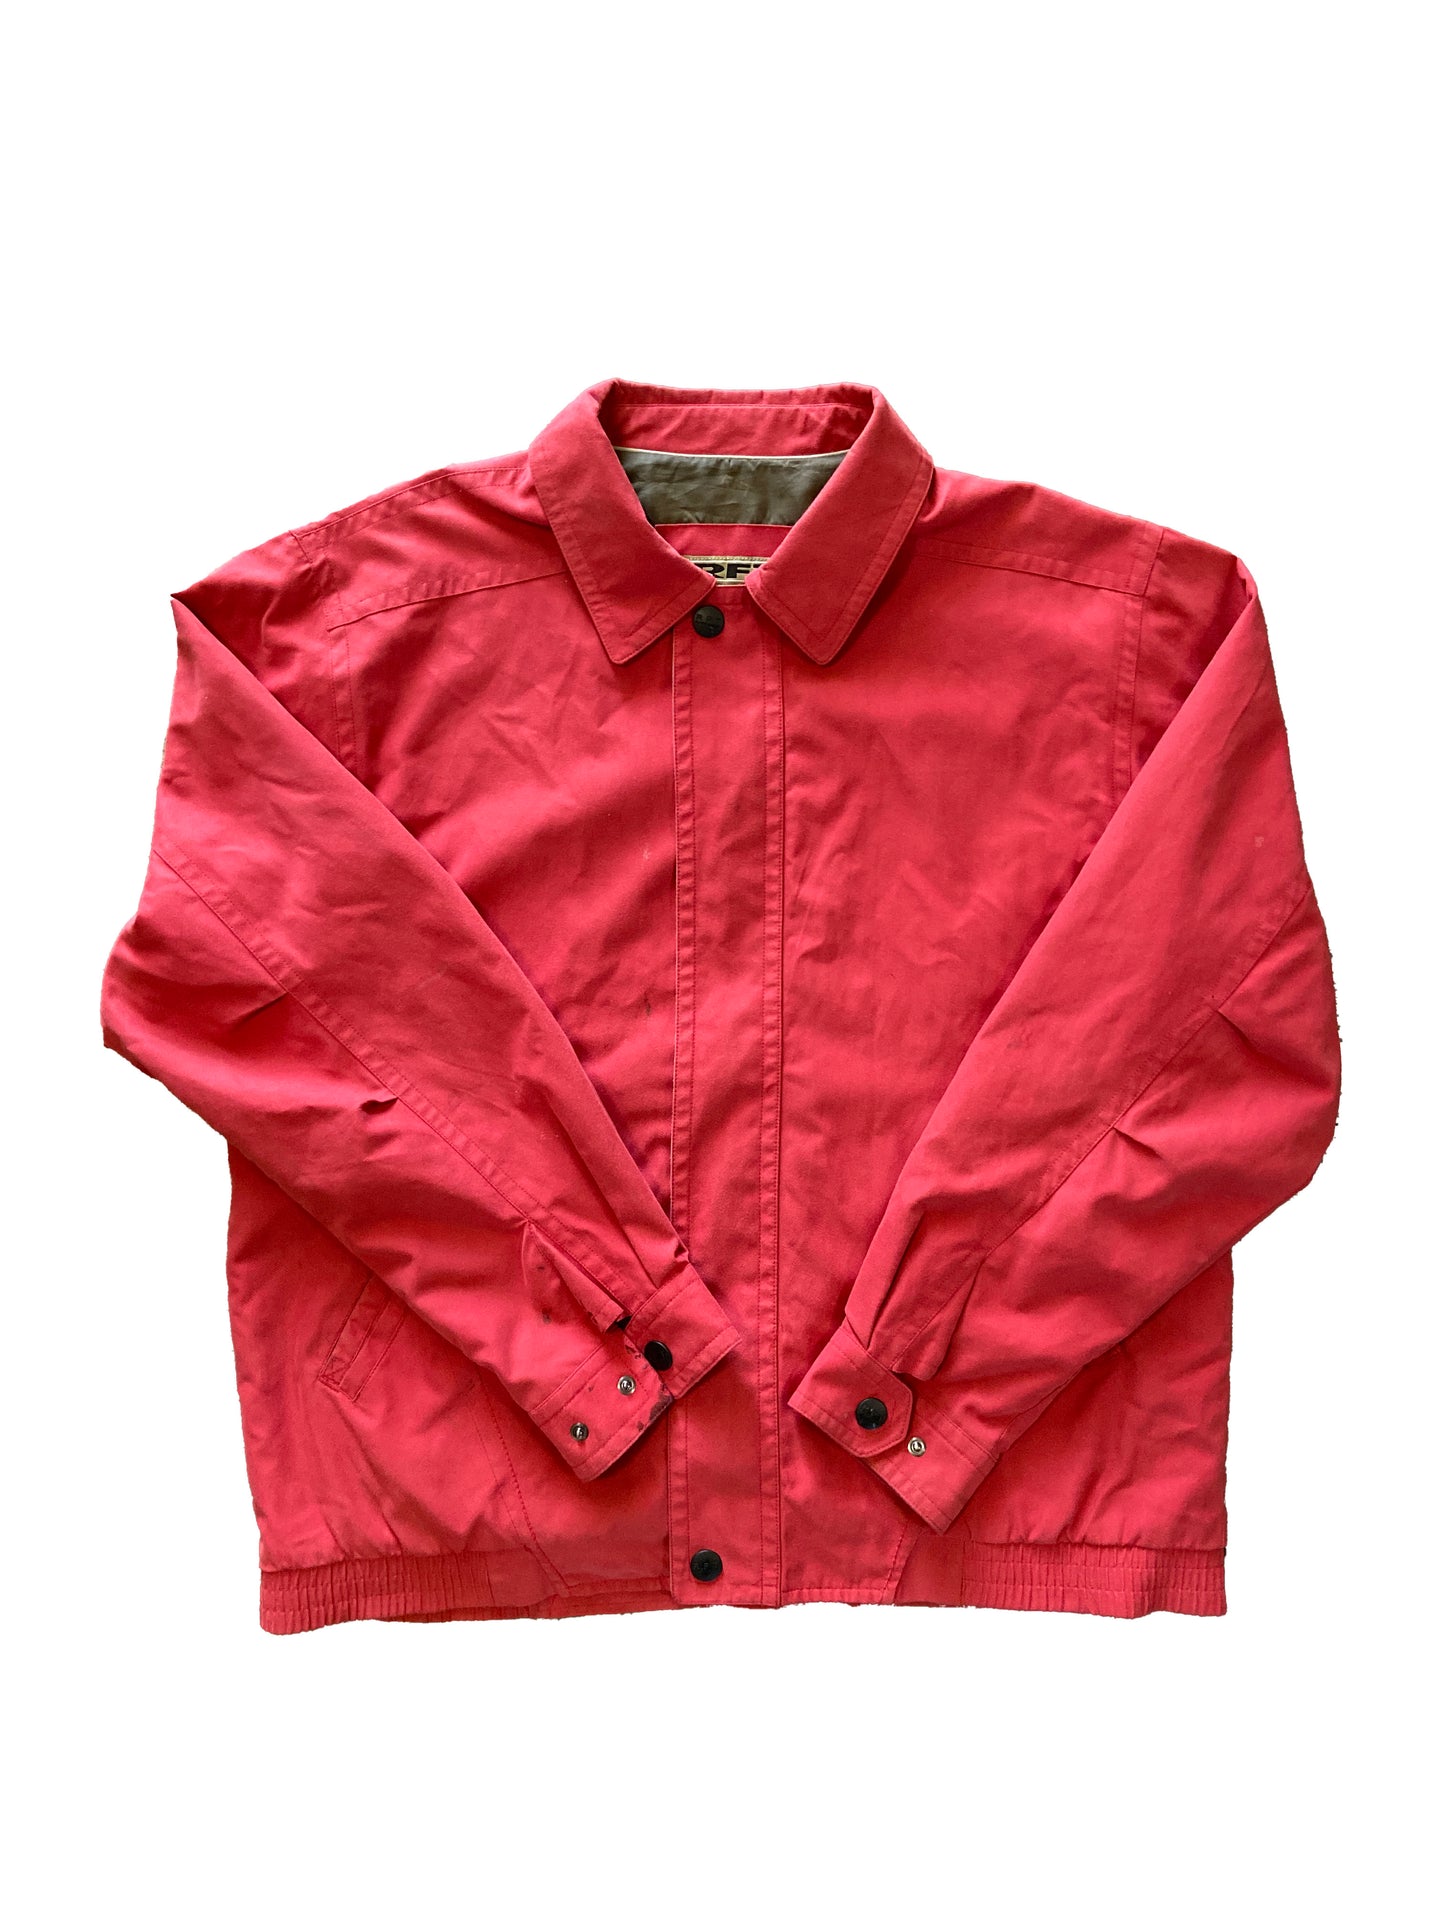 Vintage "Rainforest" Jacket Light Red